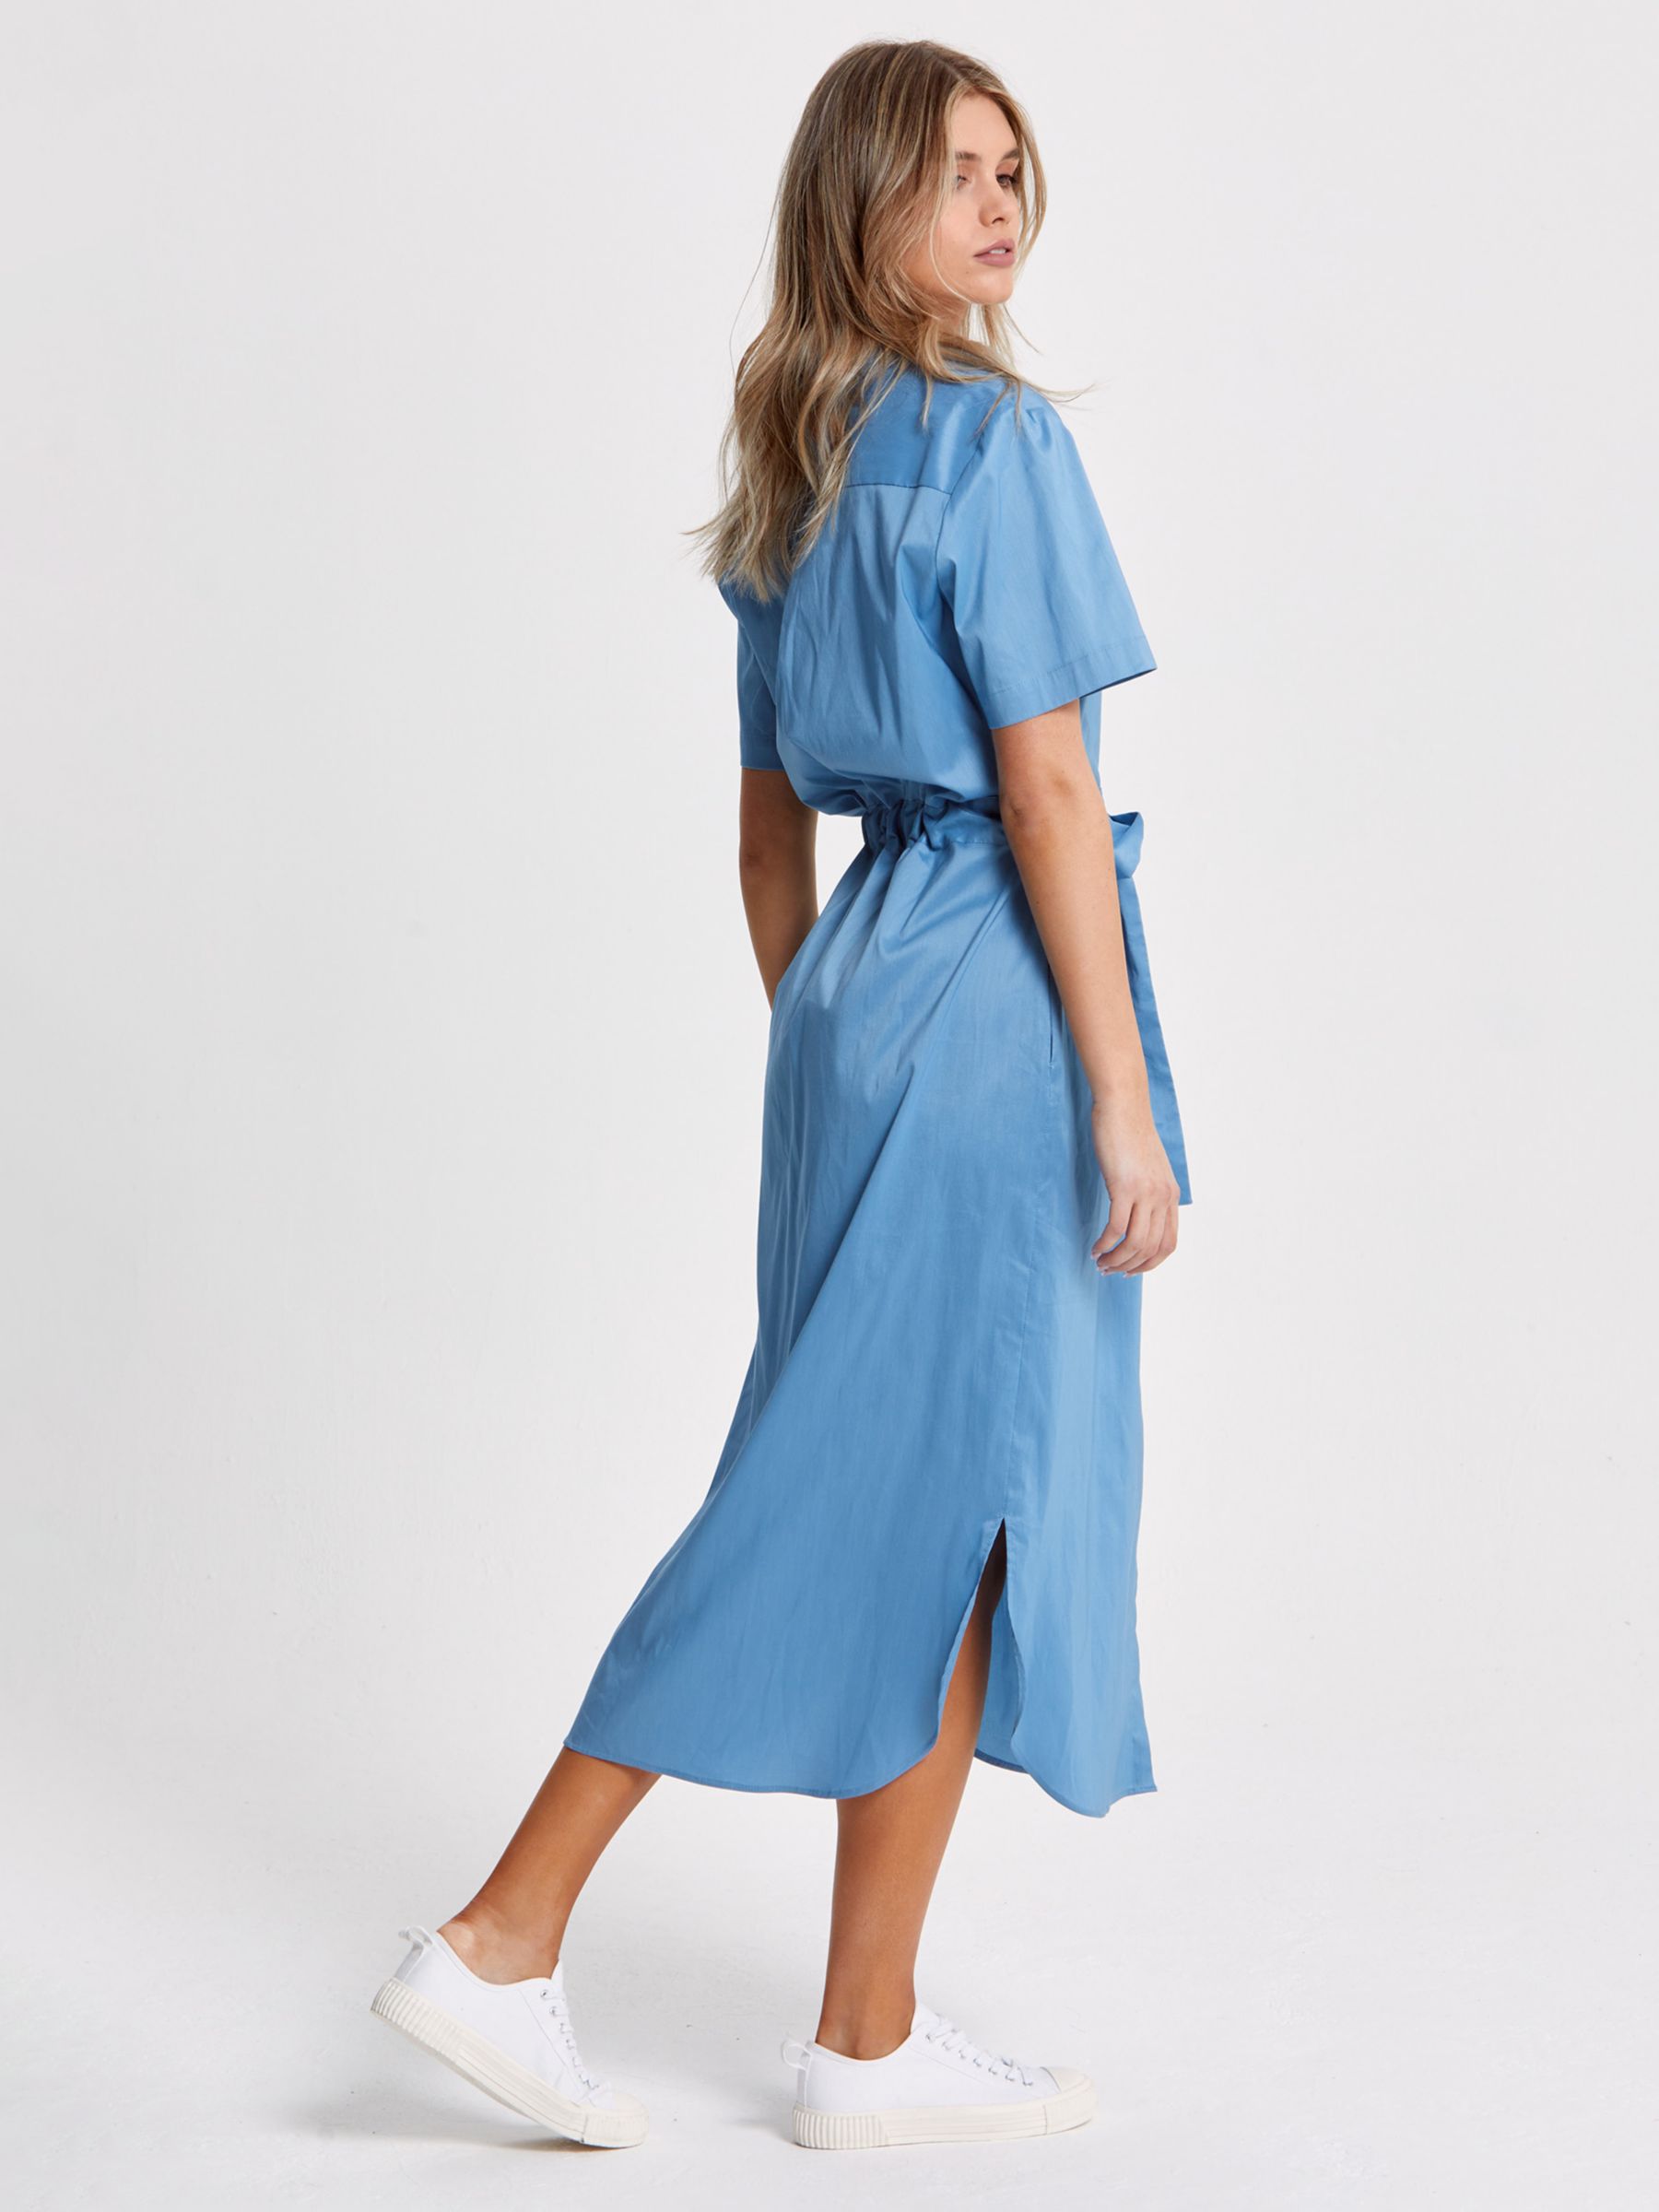 Helen McAlinden Arabella Plain Shirt Dress, Sky Blue, S